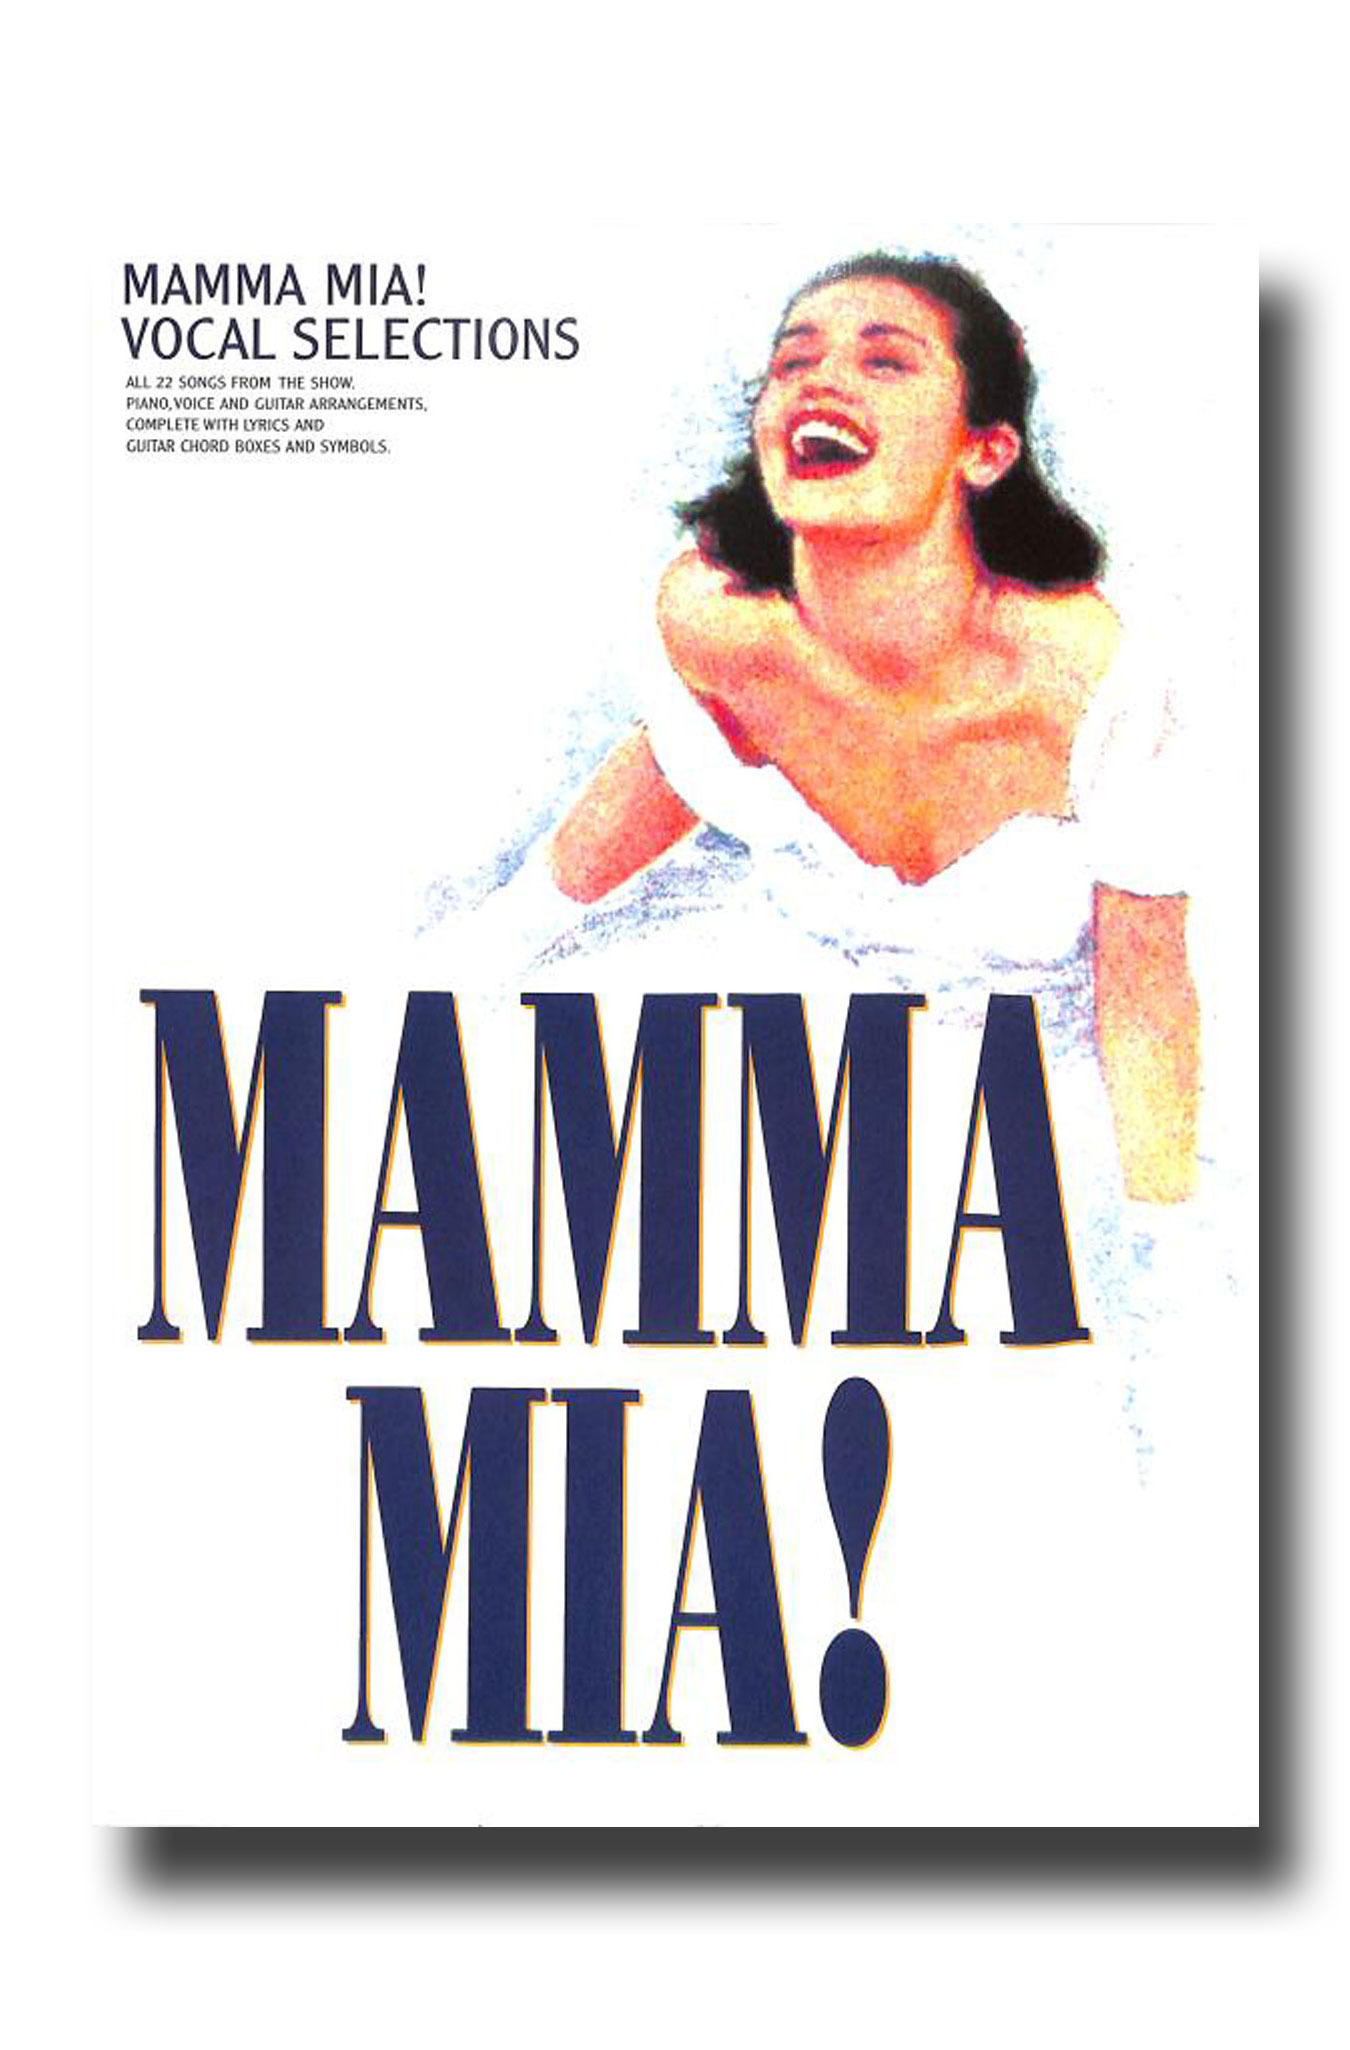 ABBA Mamma Mia! Vocal Selections